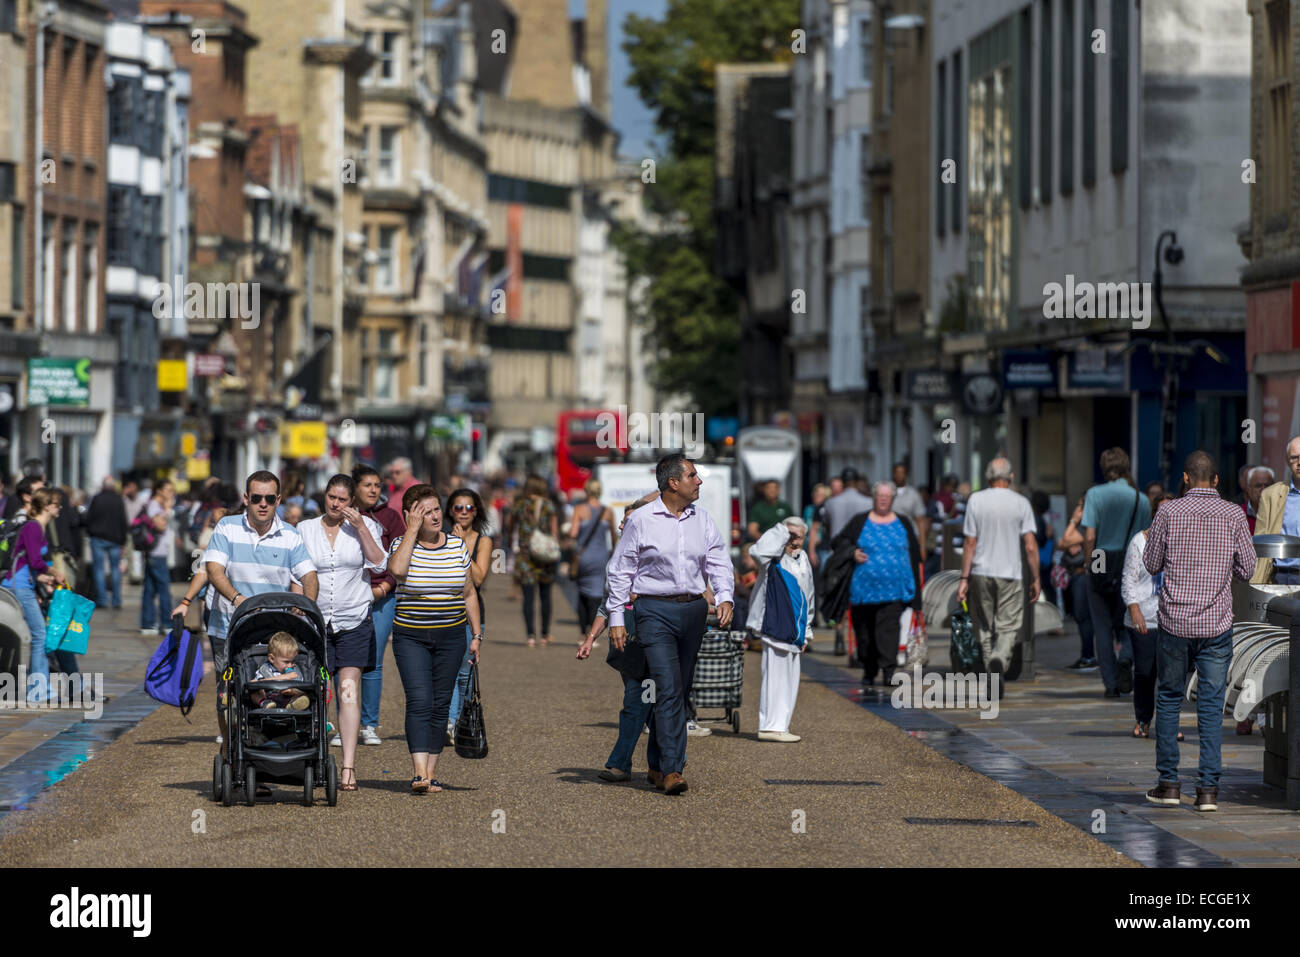 Gli amanti dello shopping tra cui una famiglia con un passeggino camminando giù Cornmarket Street, Oxford city centre, REGNO UNITO Foto Stock